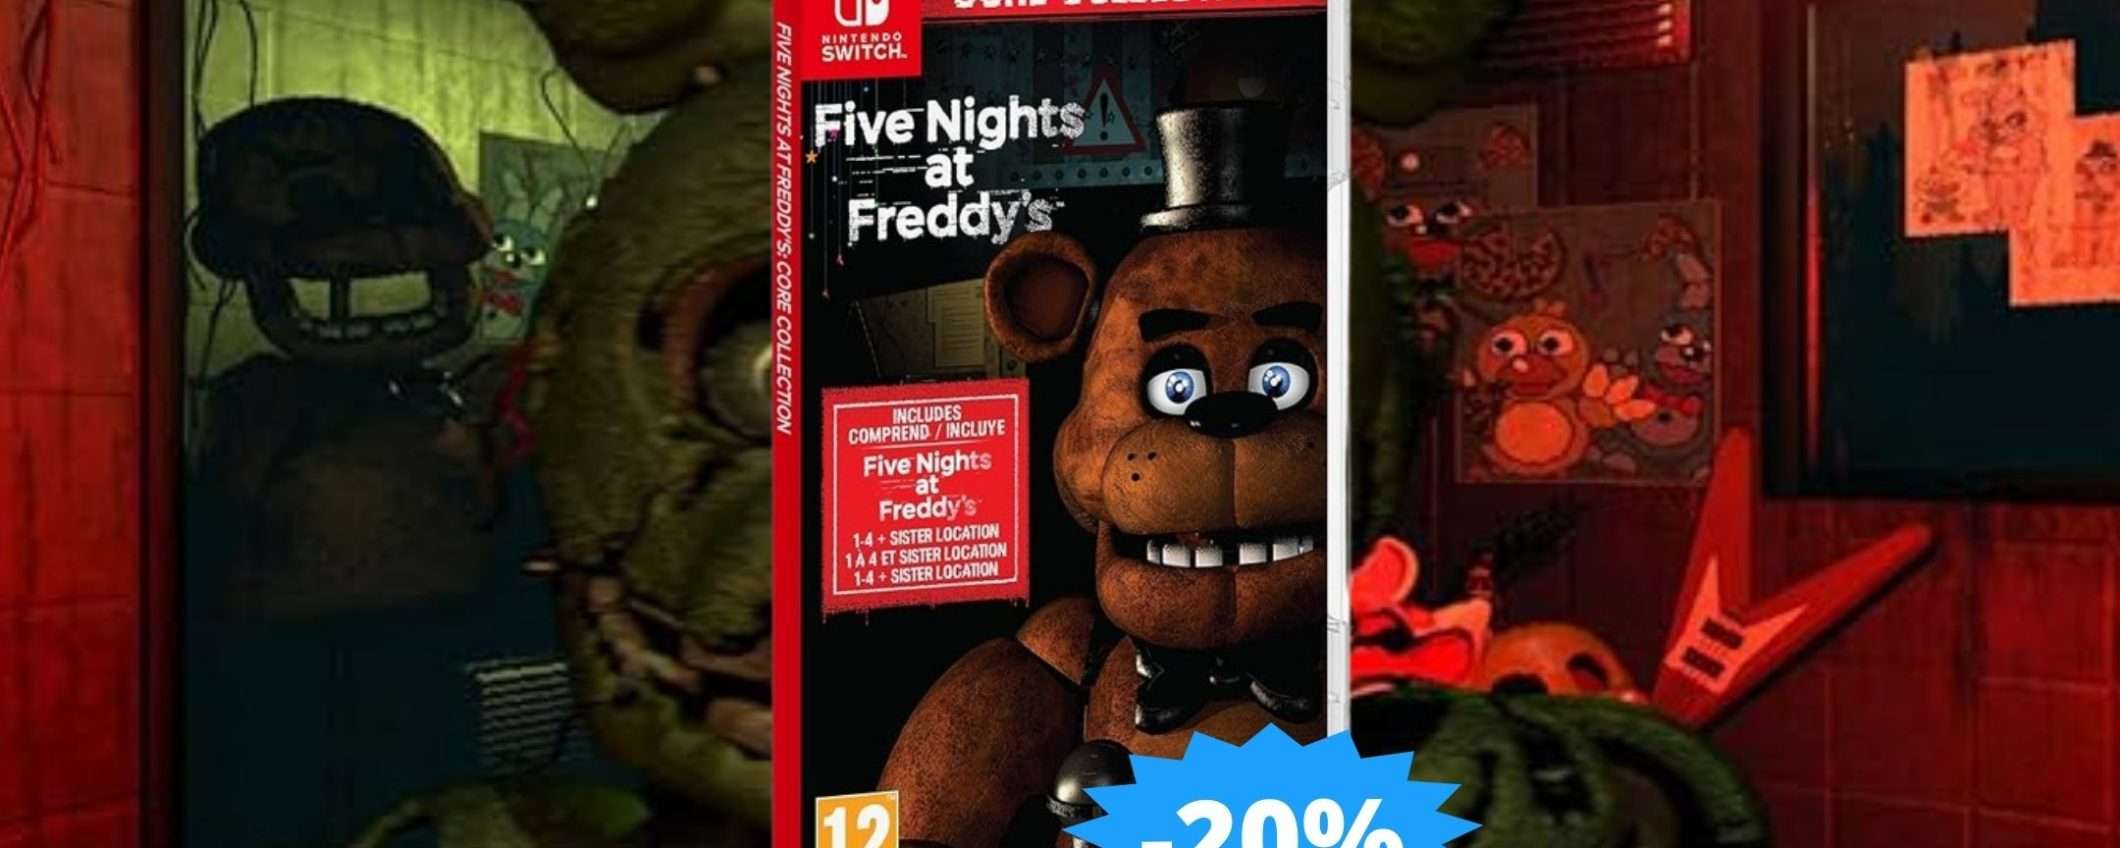 Five Nights at Freddy's per Nintendo: un tuffo nel terrore animatronico